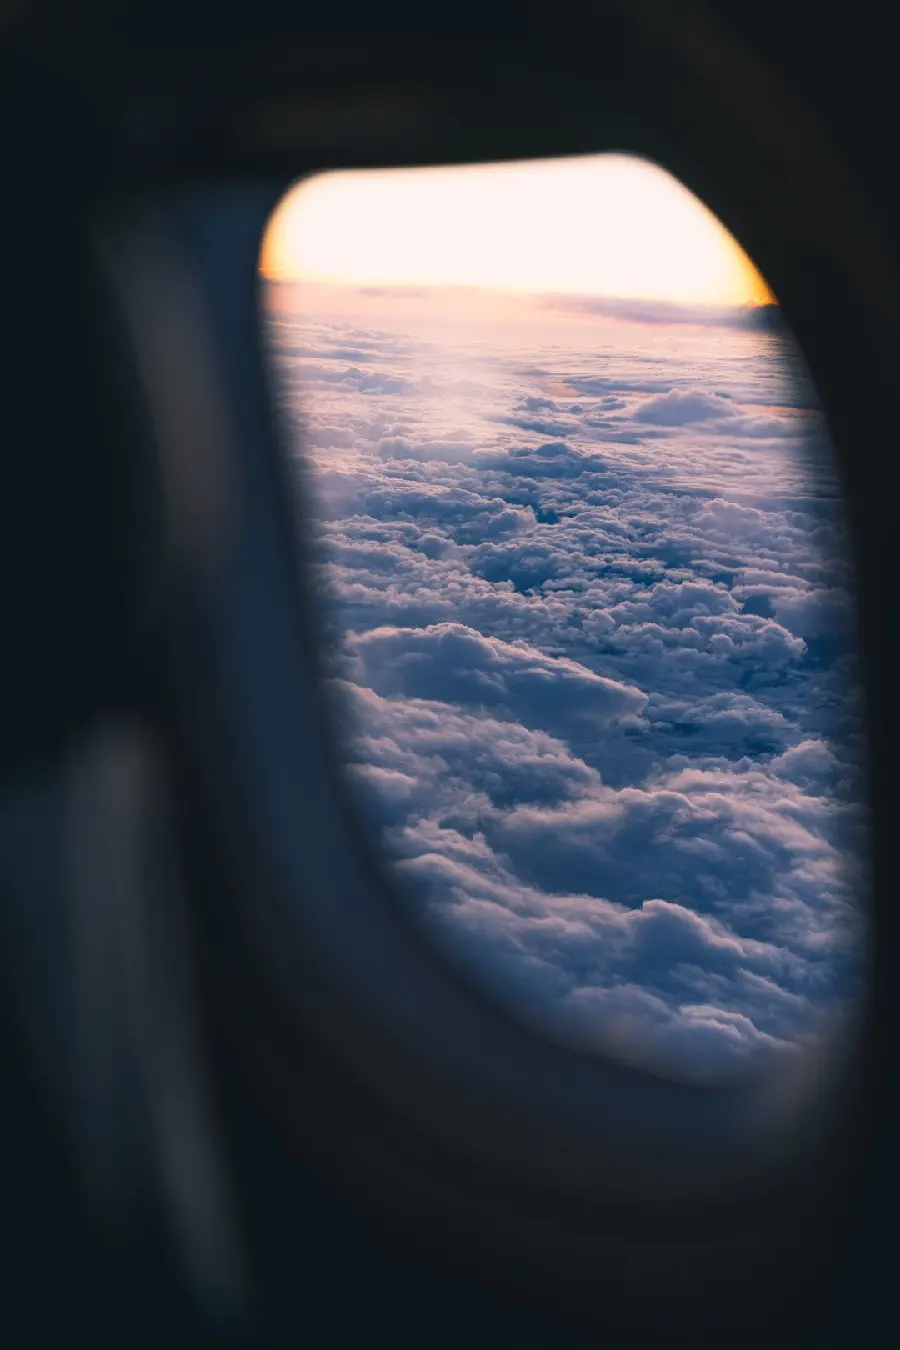 عکس پنجره کوچک هواپیمای مسافربری بر فراز ابرهای پنبه ای